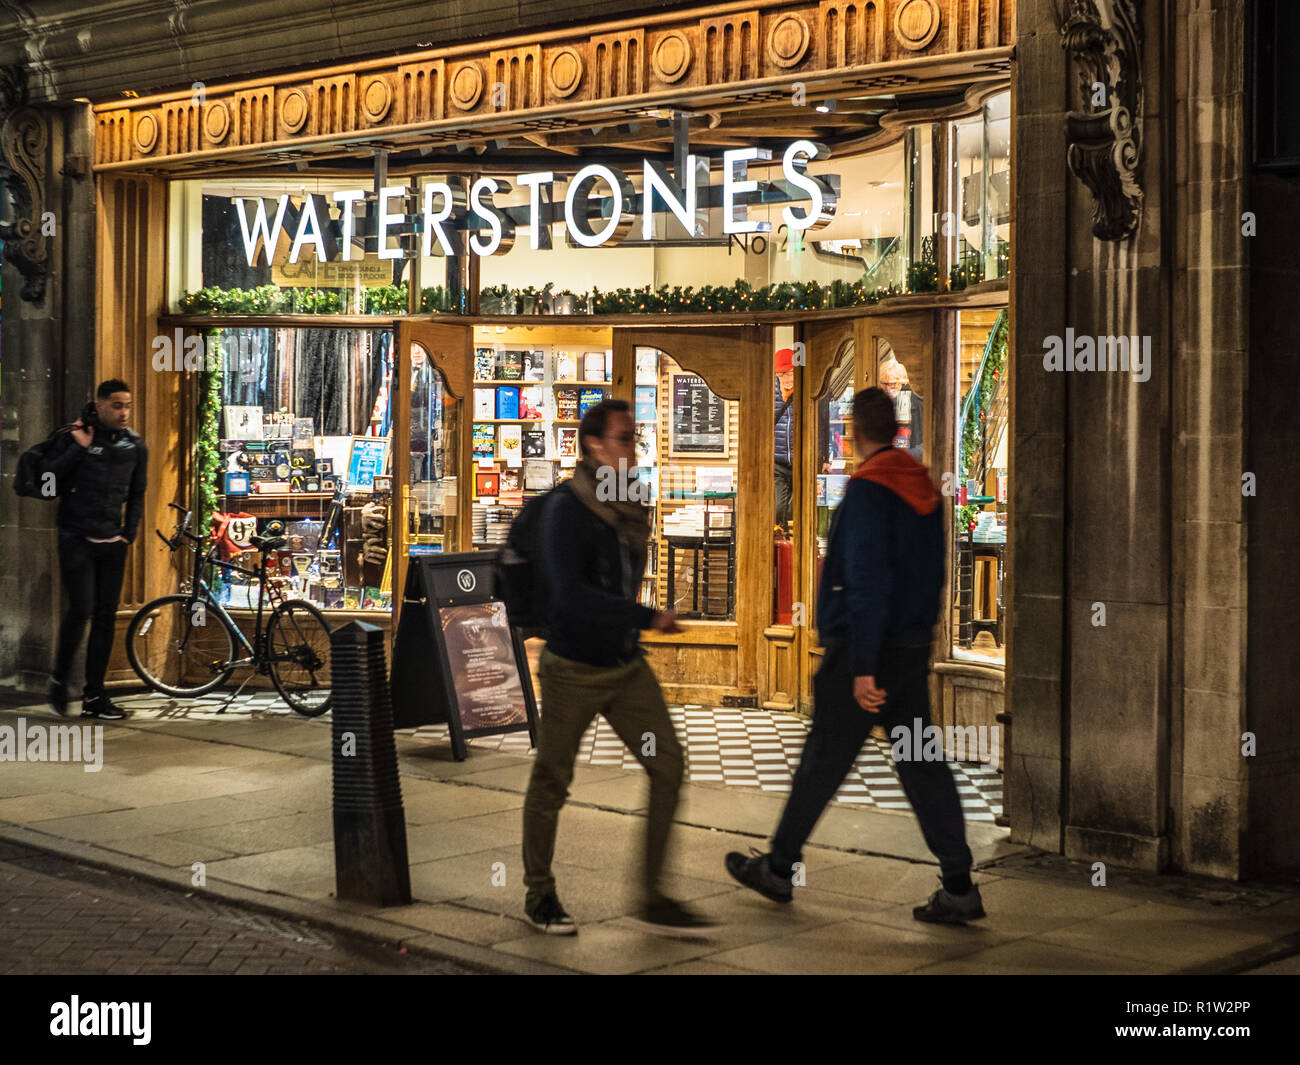 Waterstones Bookshop / Waterstones Bookstore at dusk - the refurbished Waterstones bookshop in central Cambridge UK Stock Photo